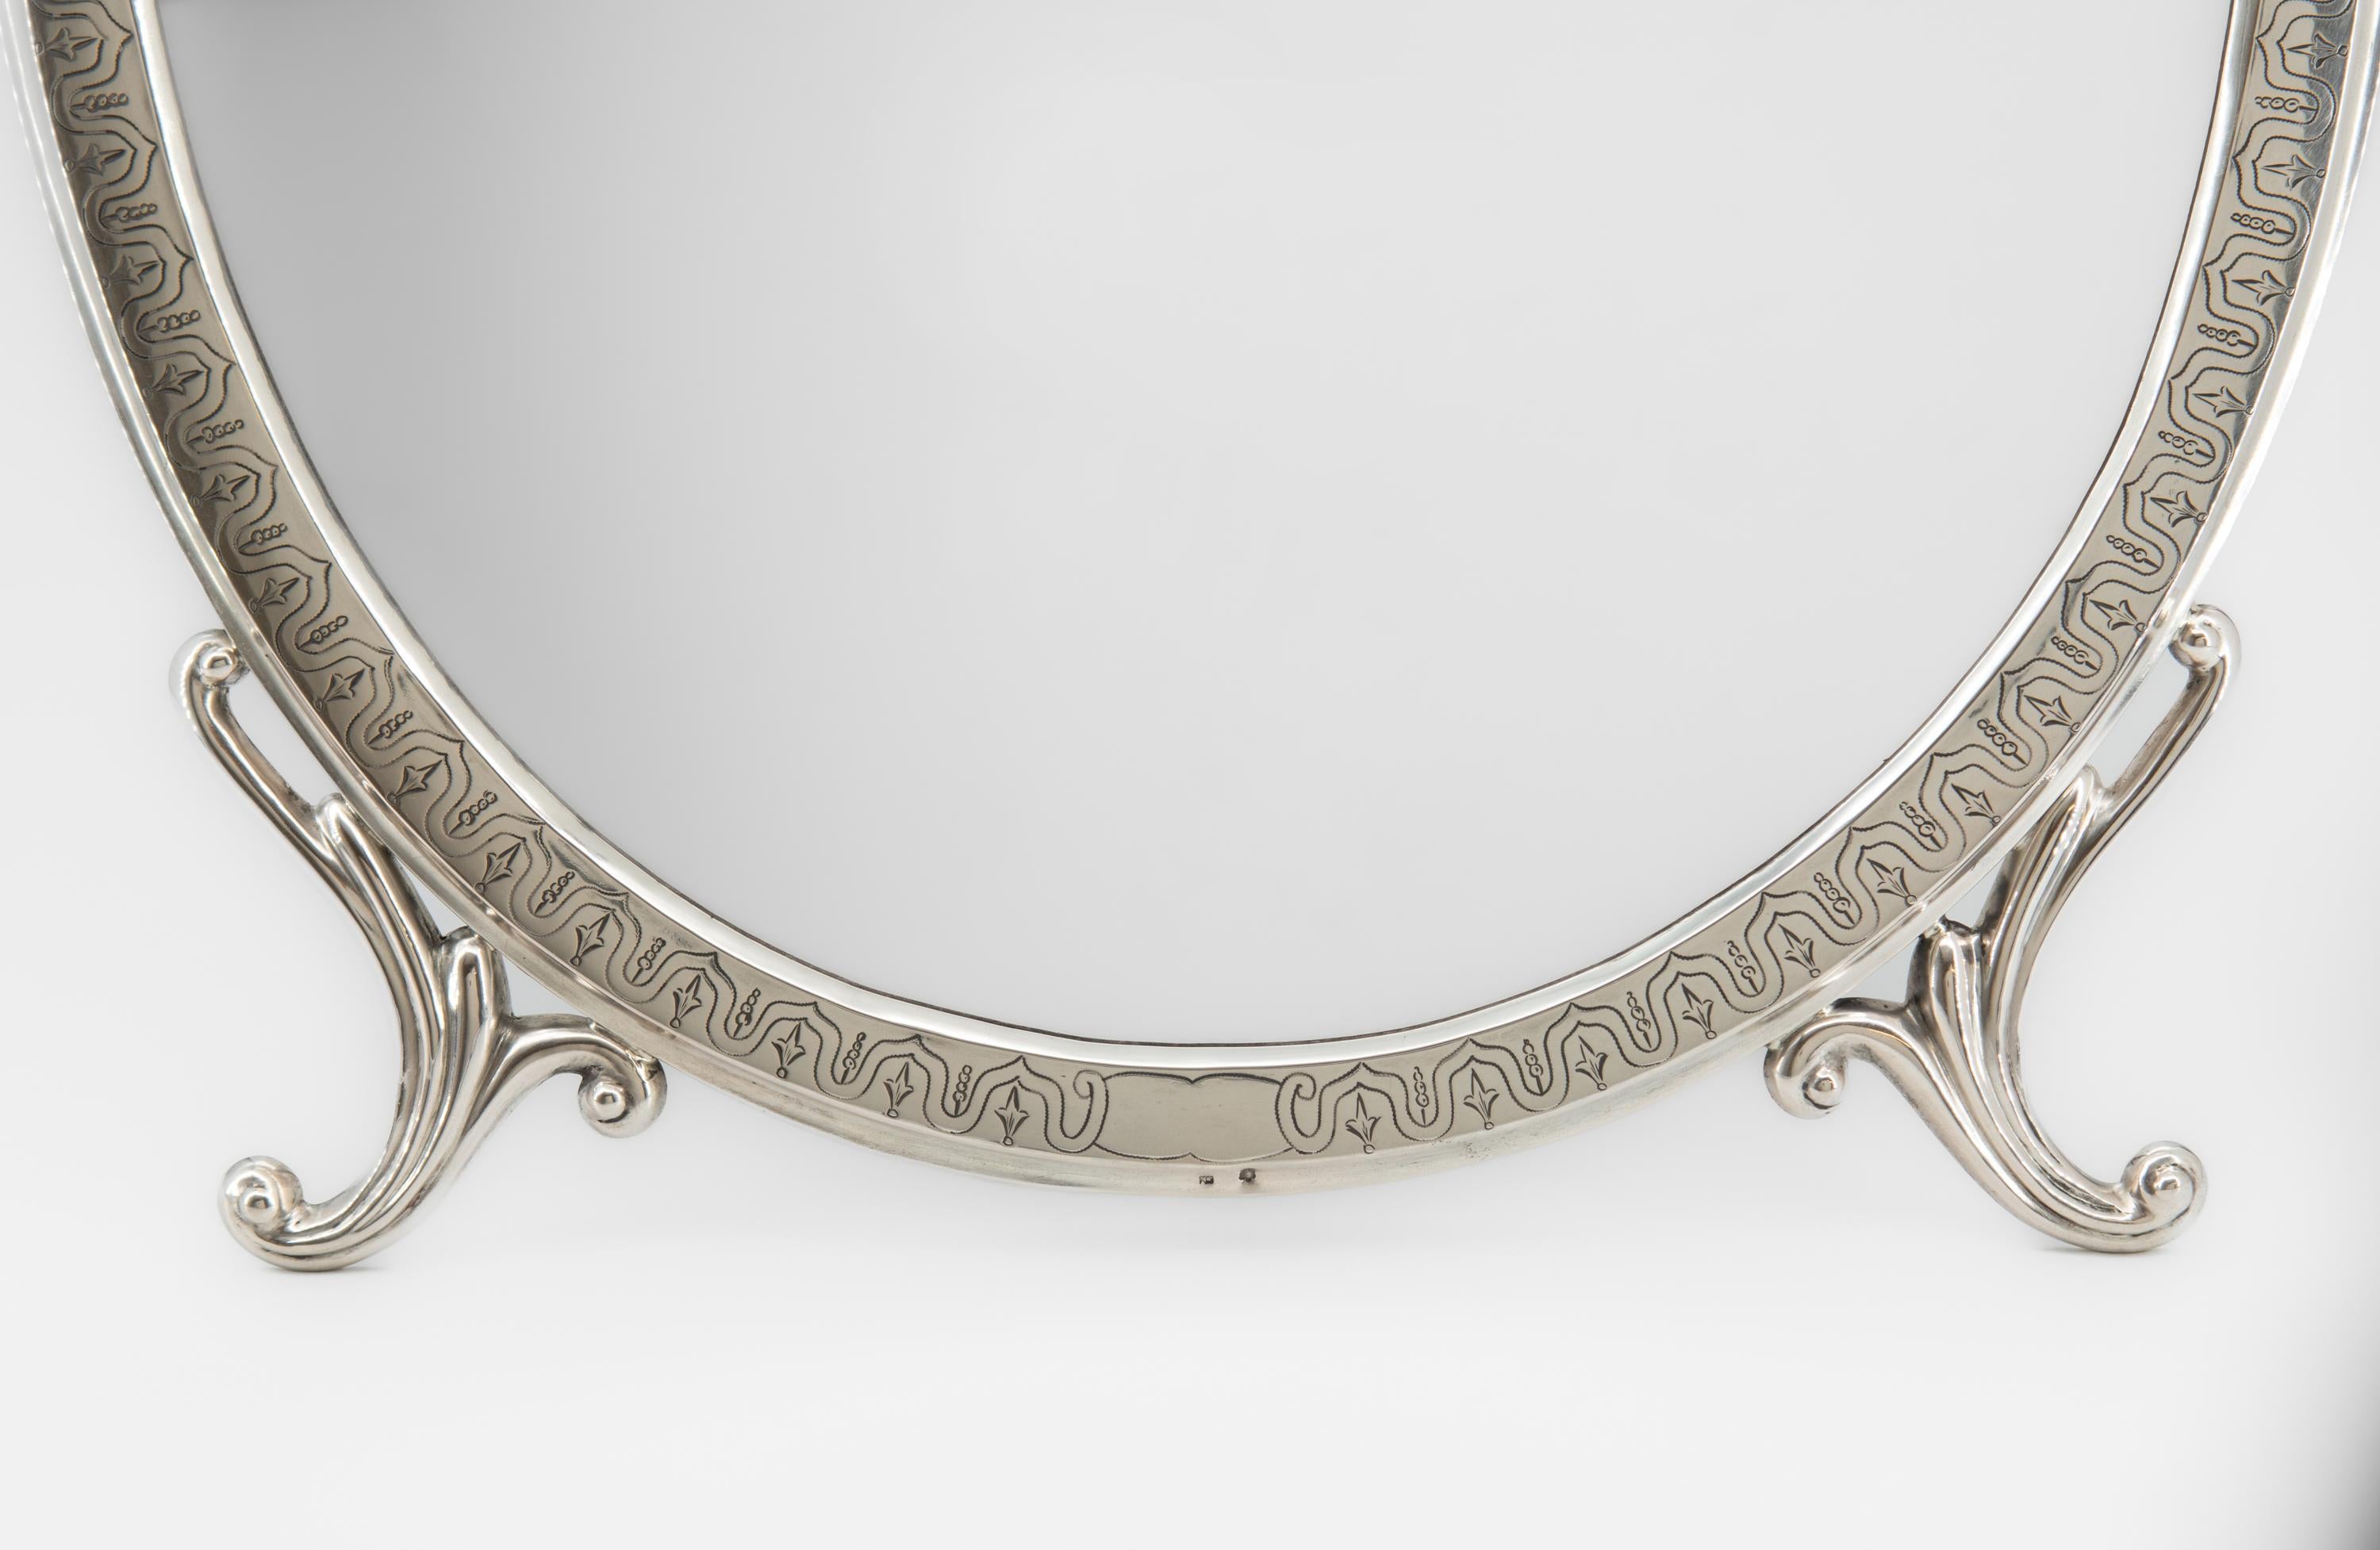 Antiker österreichischer 750er-Silberspiegel mit ovalem Strebenrahmen für den Frisiertisch. Wien - CIRCA 1890. Der Kopf der Diana in einem Kleeblatt auf dem Rahmen, flankiert von einer 4 und den Initialen des Herstellers.

Der ovale Spiegel hat